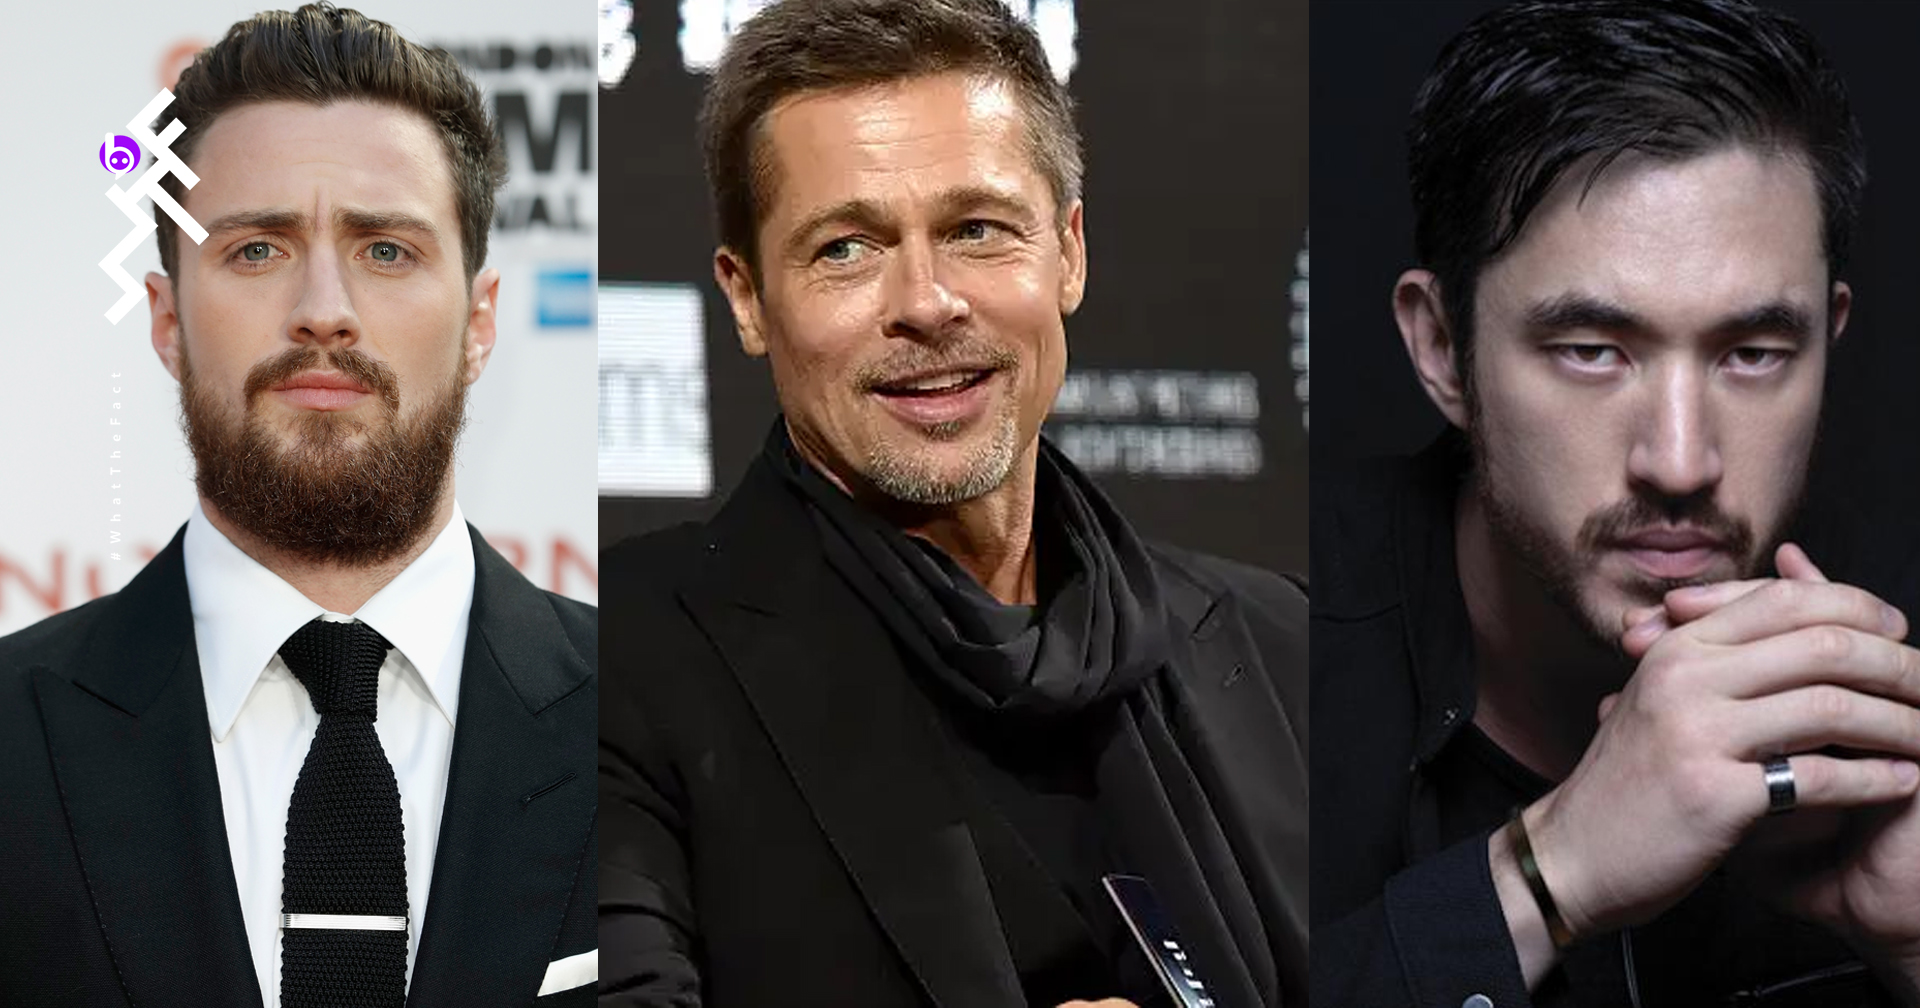 Aaron Taylor-Johnson สมทบ Brad Pitt ในหนังต่อสู้บนชินคันเซ็น “Bullet Train” ที่ได้รับคำนิยามว่าจะเหมือนหนัง Speed